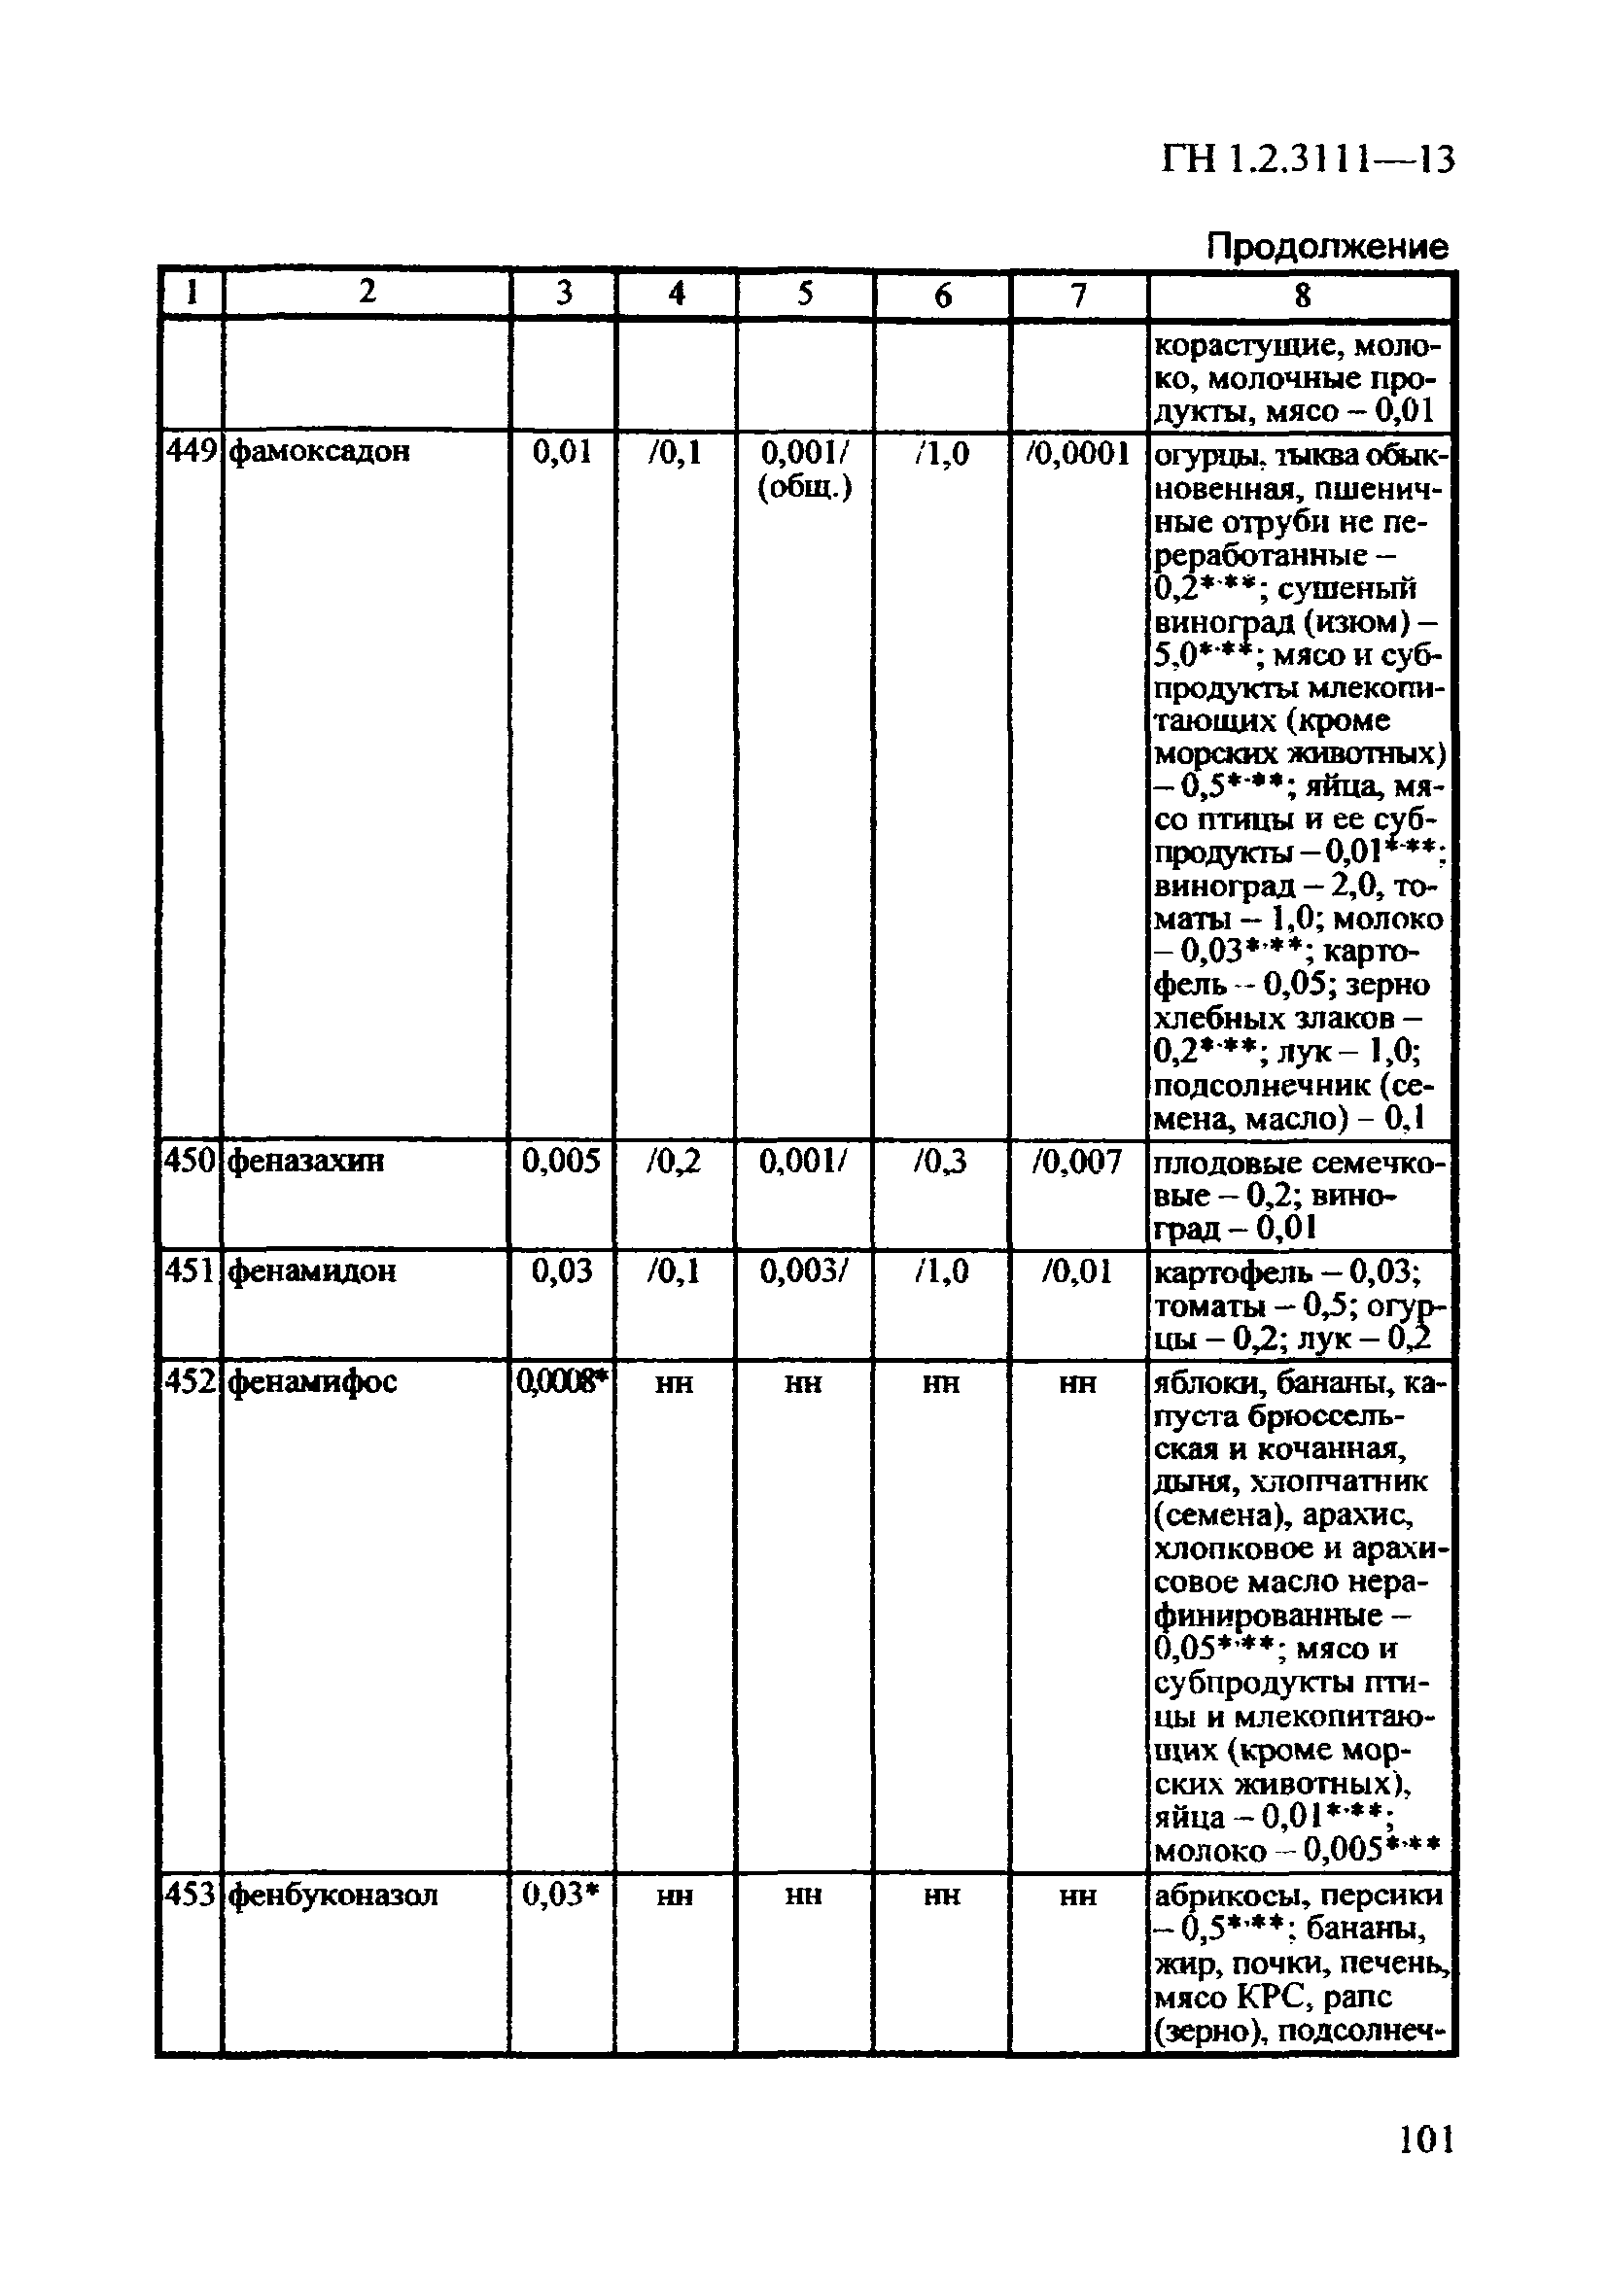 ГН 1.2.3111-13